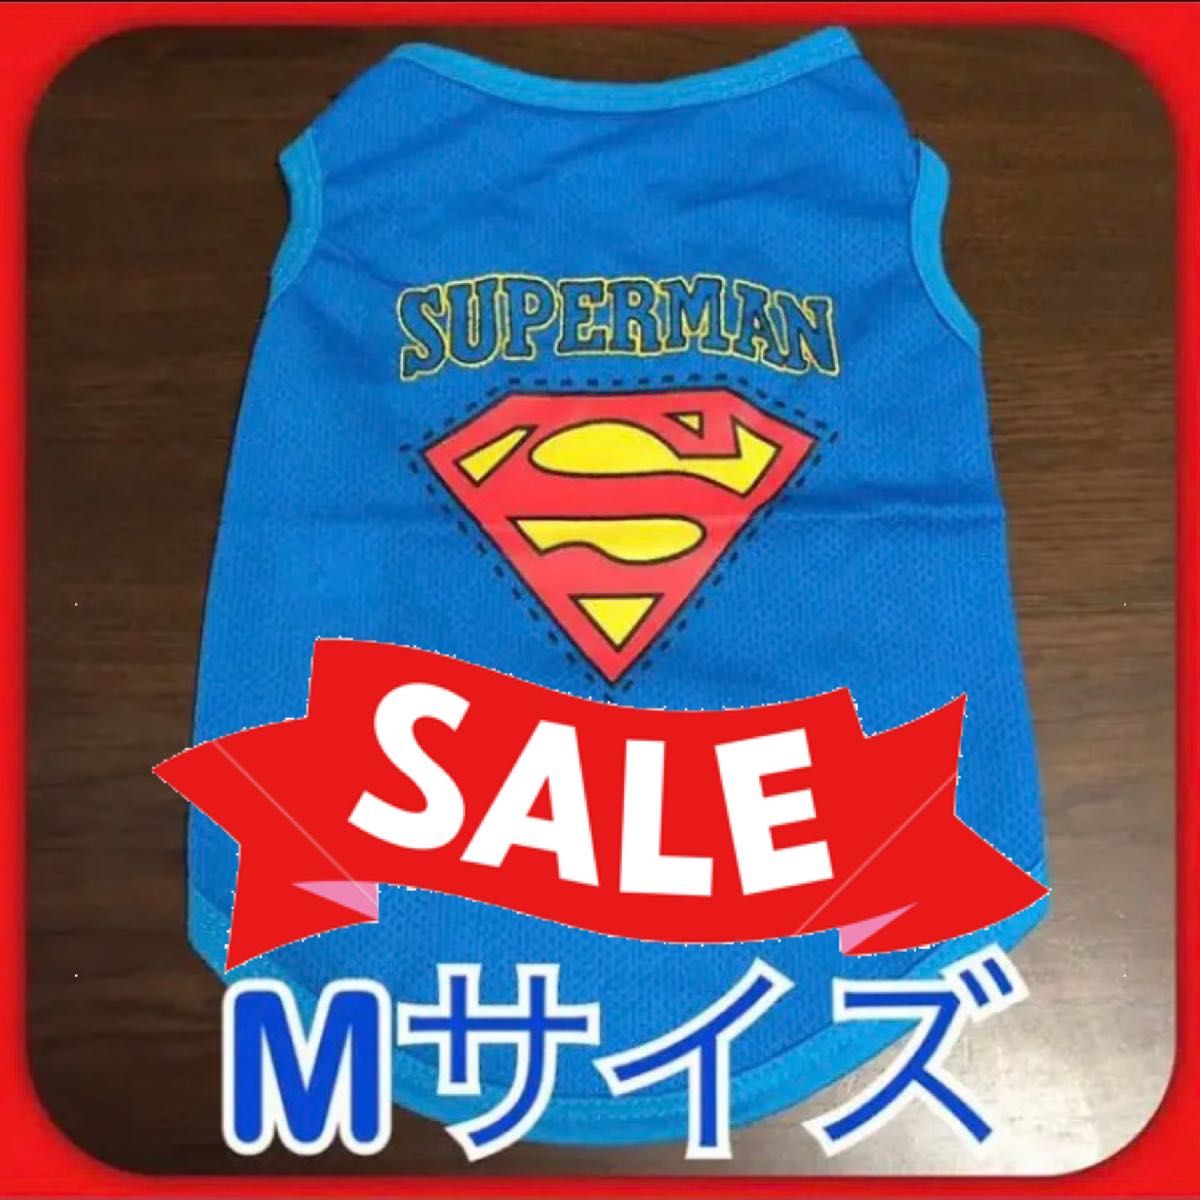 【 SALE 】 犬服 スーパーマン メッシュ 青 ブルー 小型犬 Mサイズ